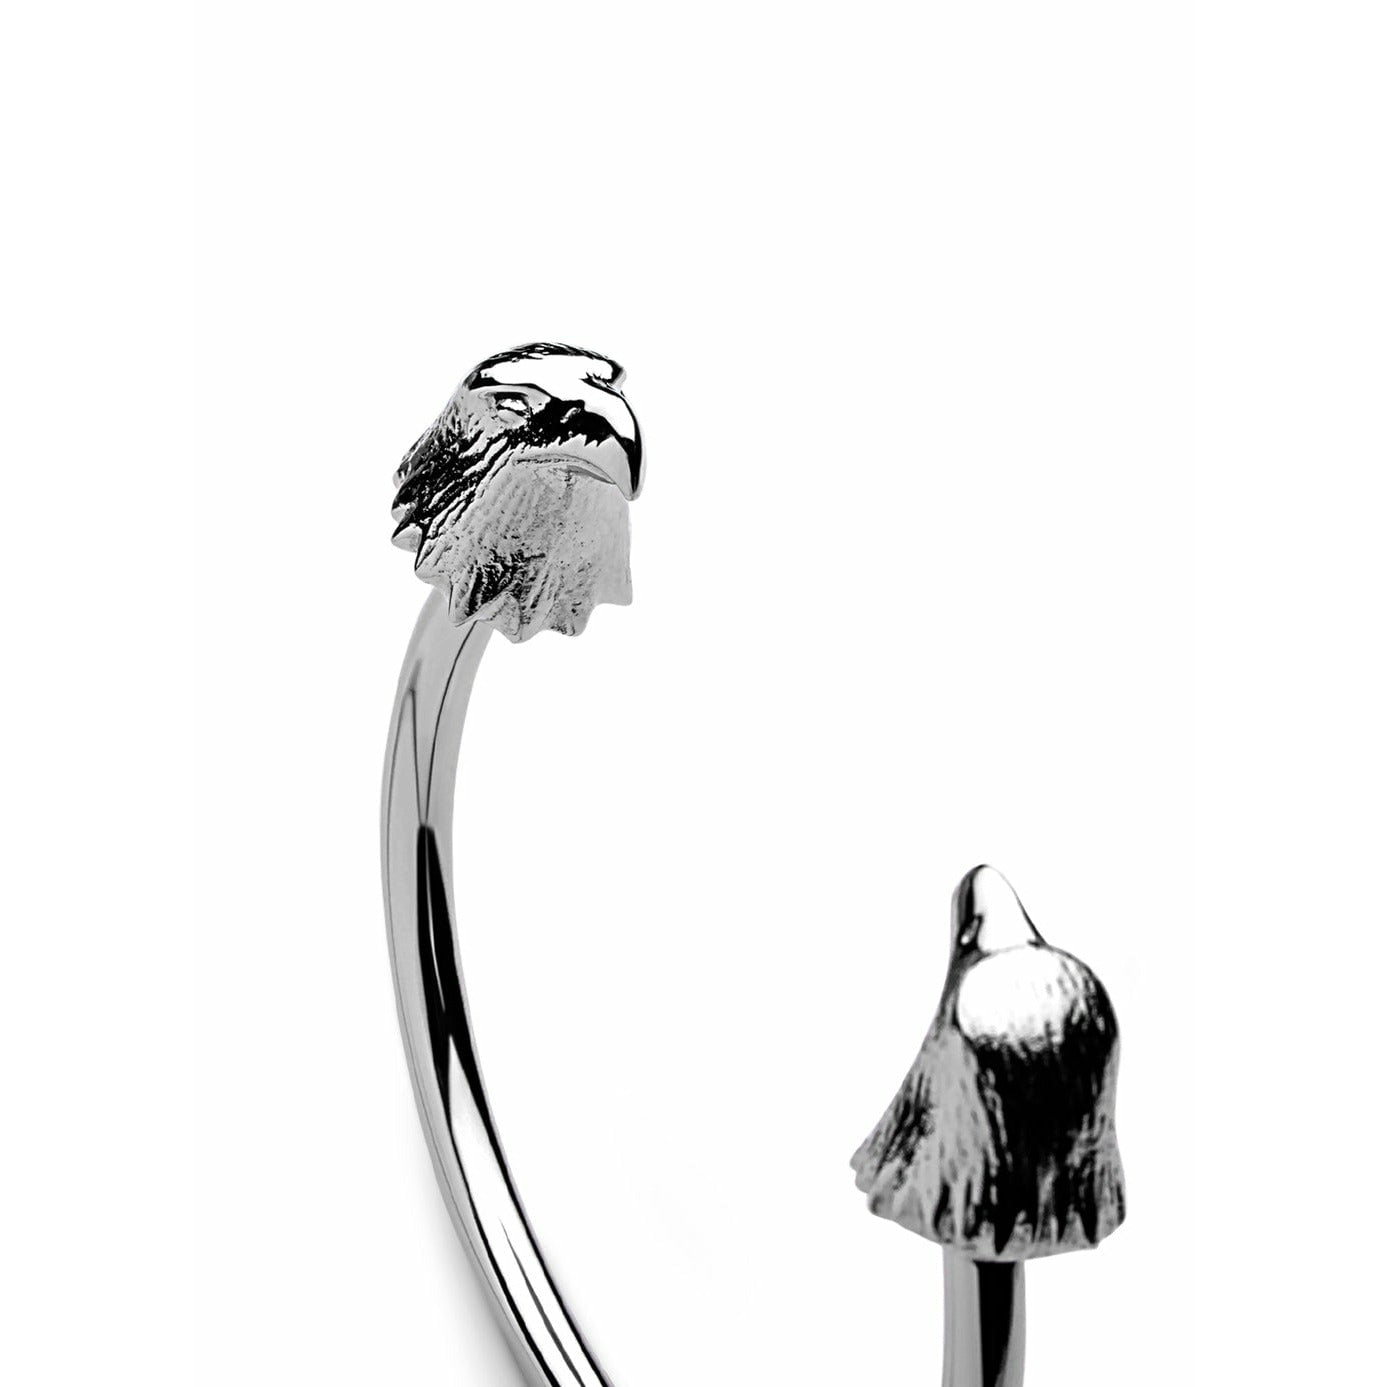 Skultuna el pulsador de águila salvaje nórdica de acero pulido grande, Ø18,5 cm